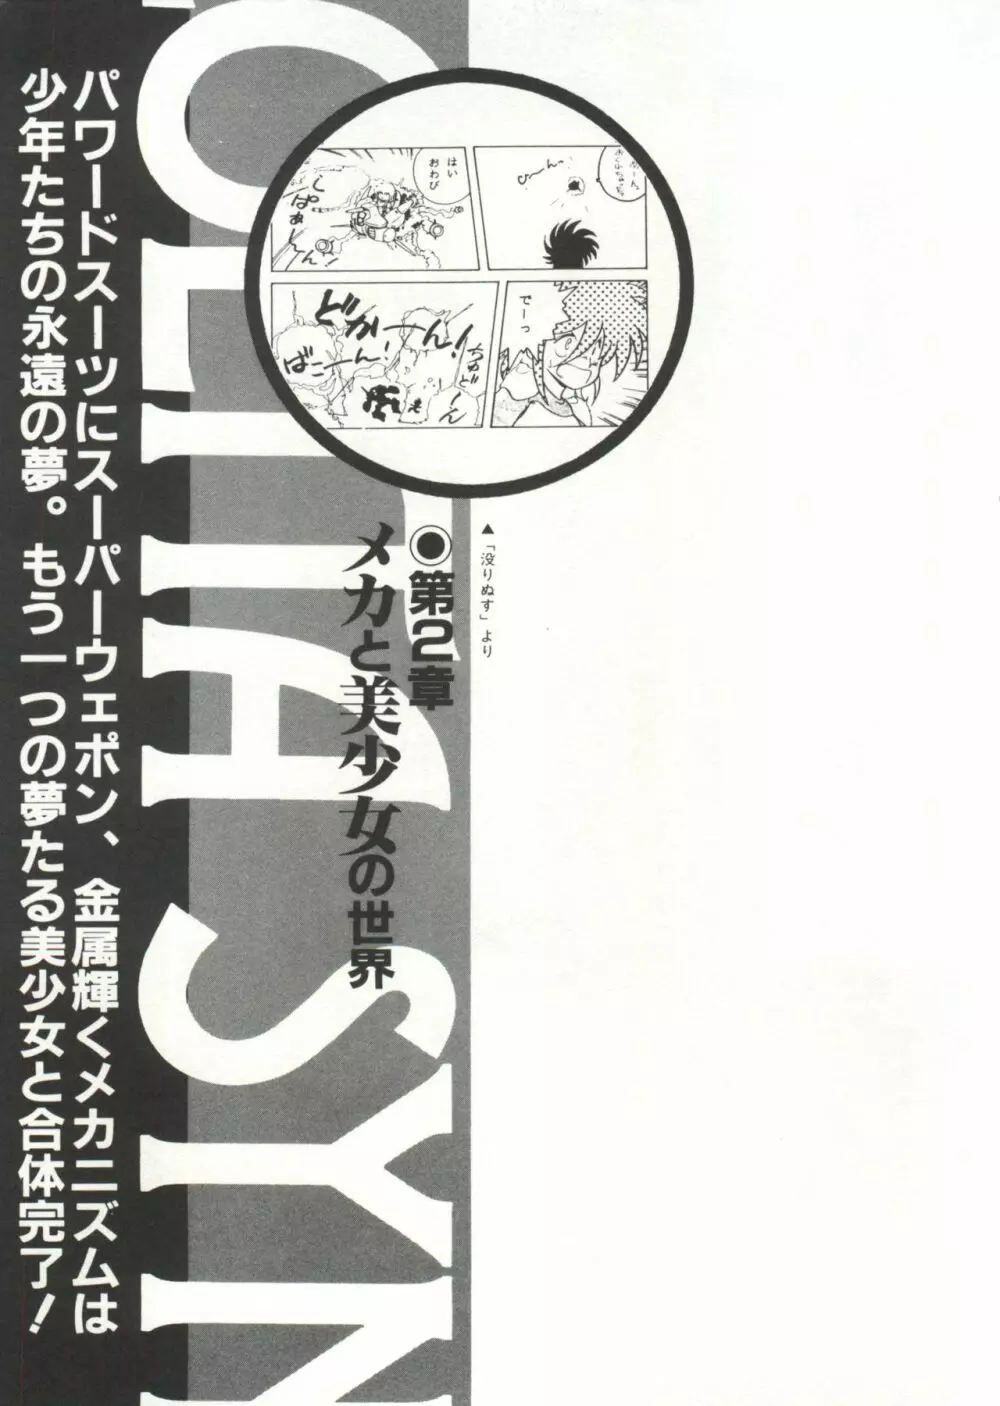 [Anthology] 美少女症候群(2) Lolita syndrome (よろず) 40ページ